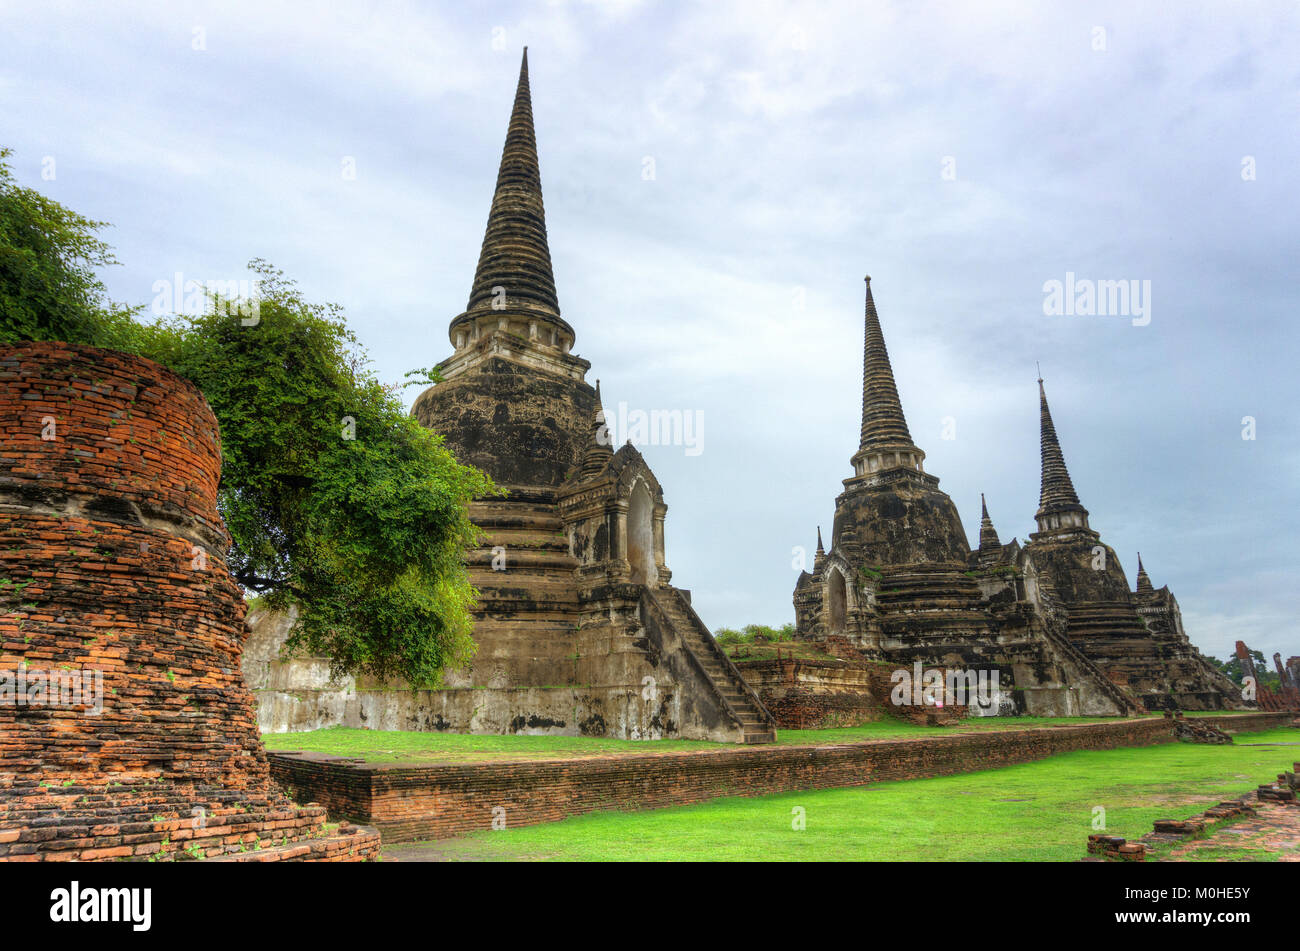 Asia,Thailand,Ayutthaya,Wat Mahathat temple ruins Stock Photo